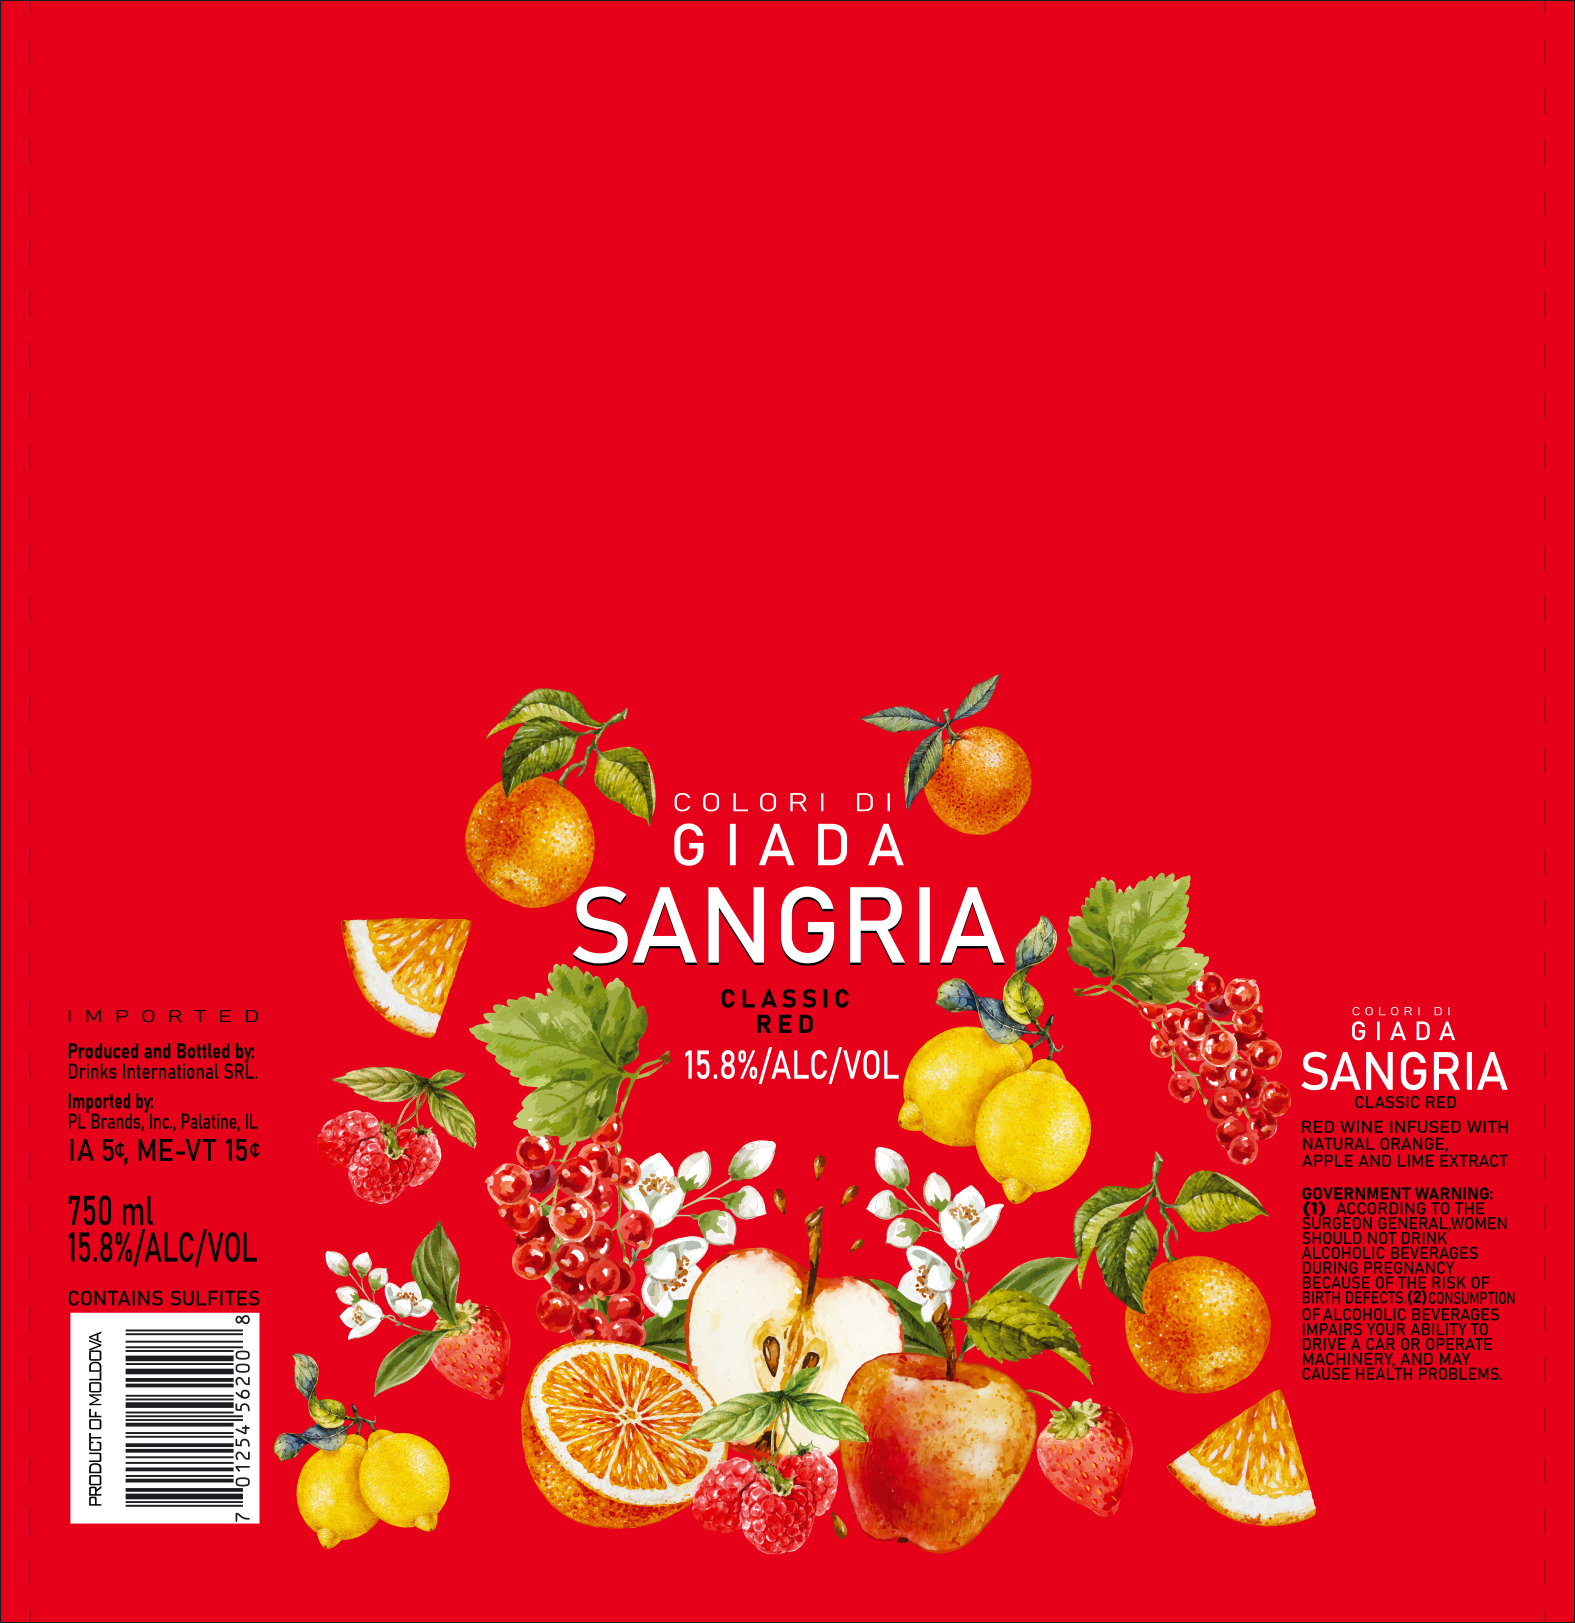 Colori Di Giada Sangria Classic Red 750 ml 12 units per case 25.4 fl Product Label